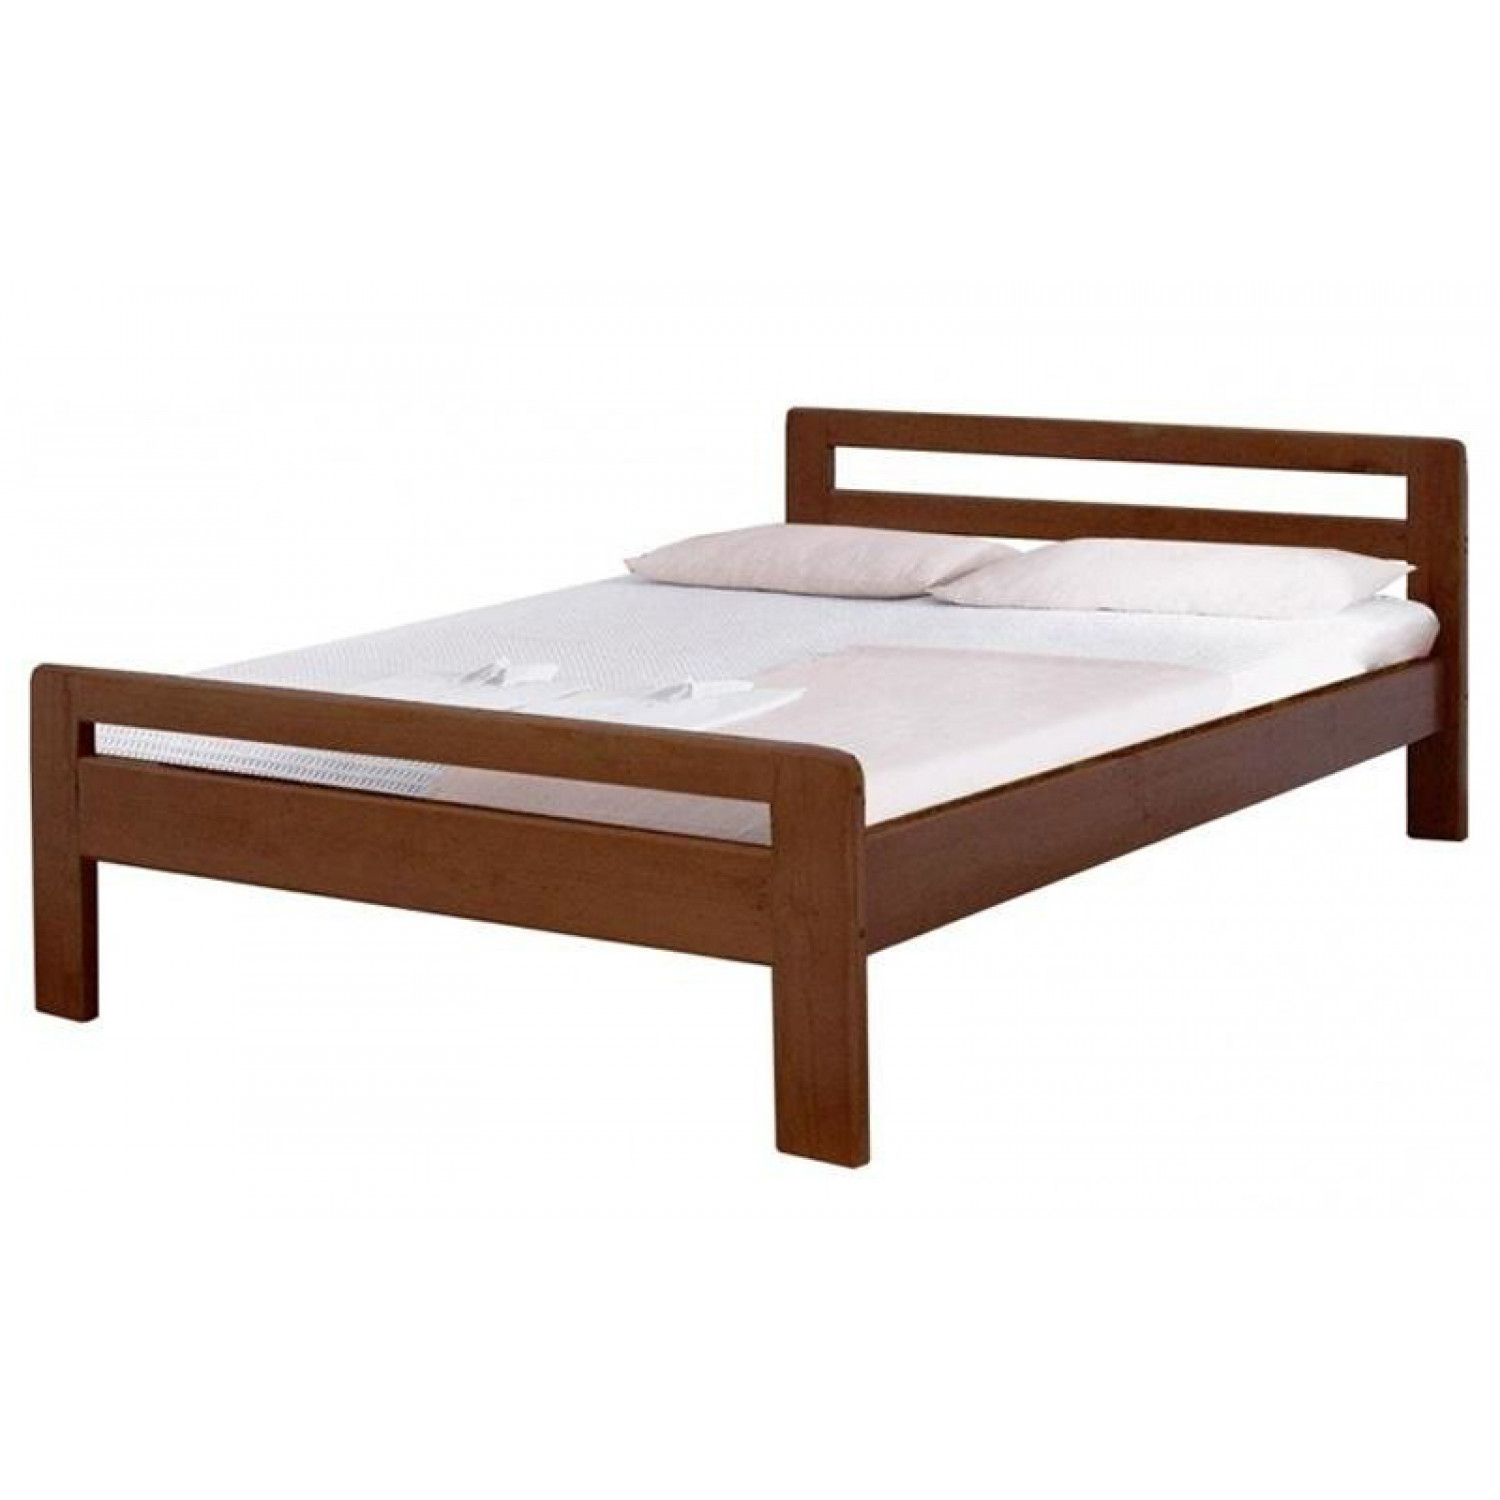 Купить деревянную кровать недорого. Кровать Калинка. Кровать ВМК-Шале Эврос 2. Кровать Калинка из массива. Кровать ВМК-Шале Калинка.